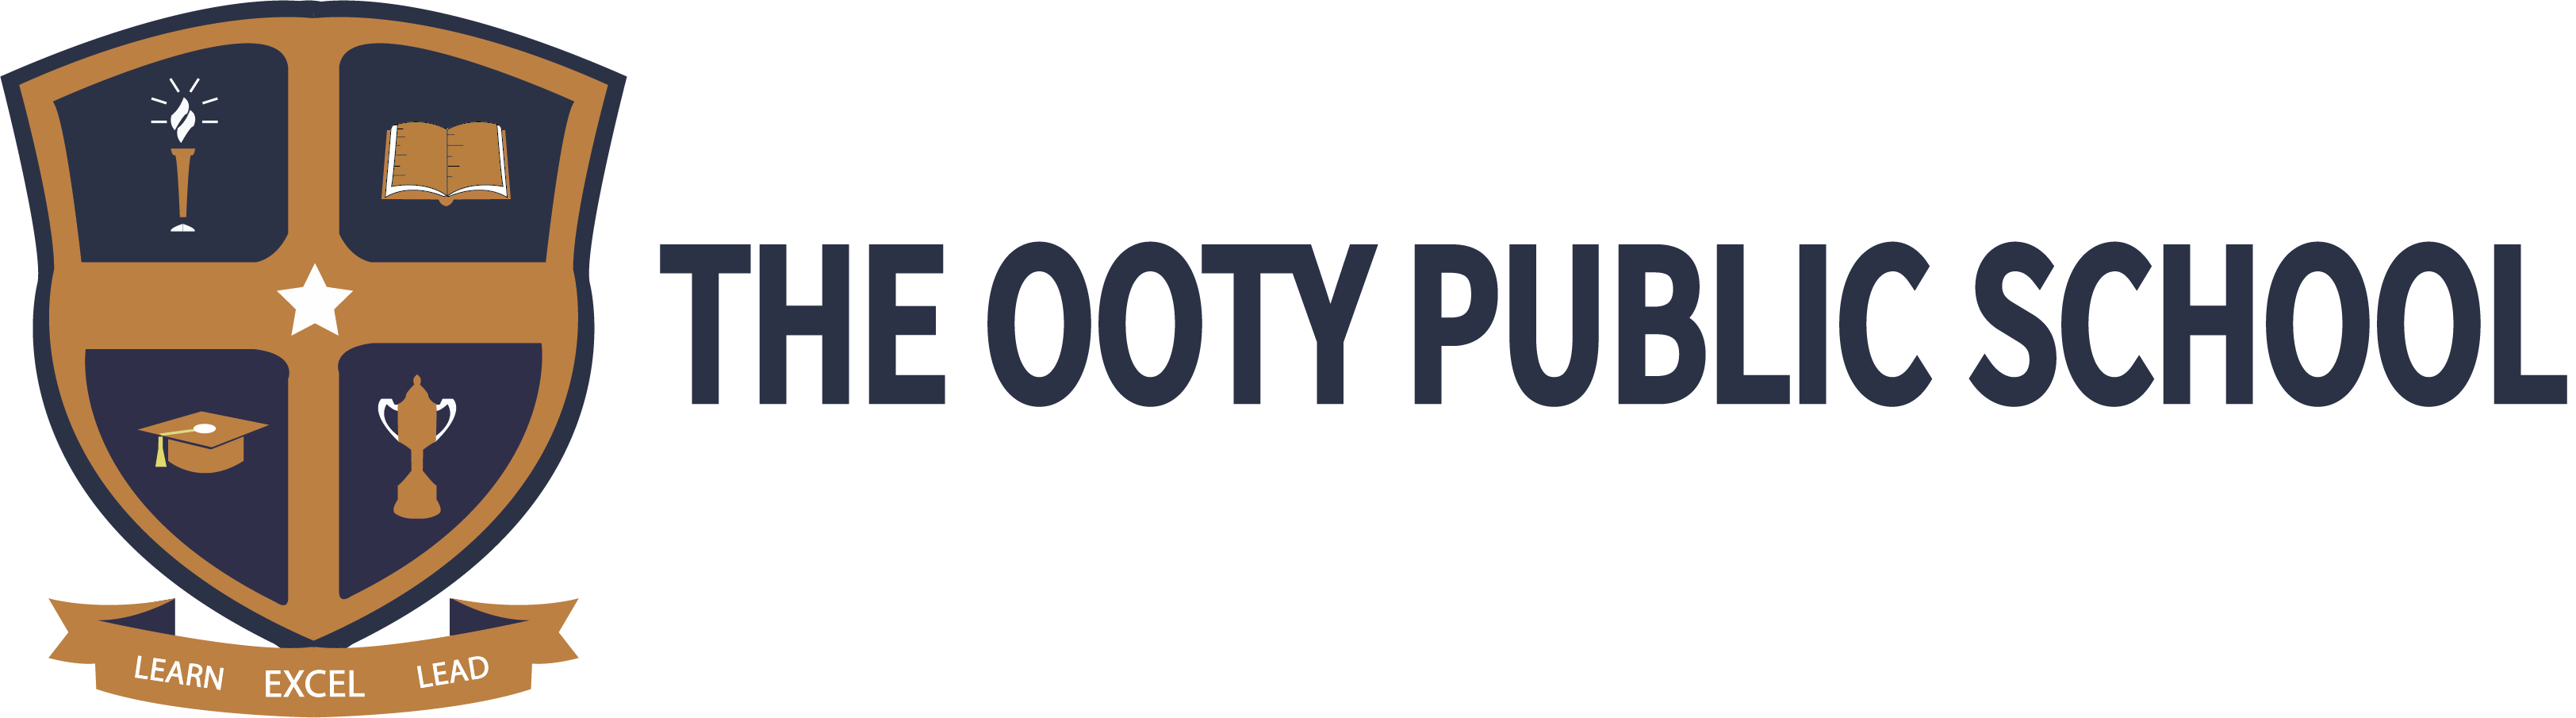 The Ooty Public School